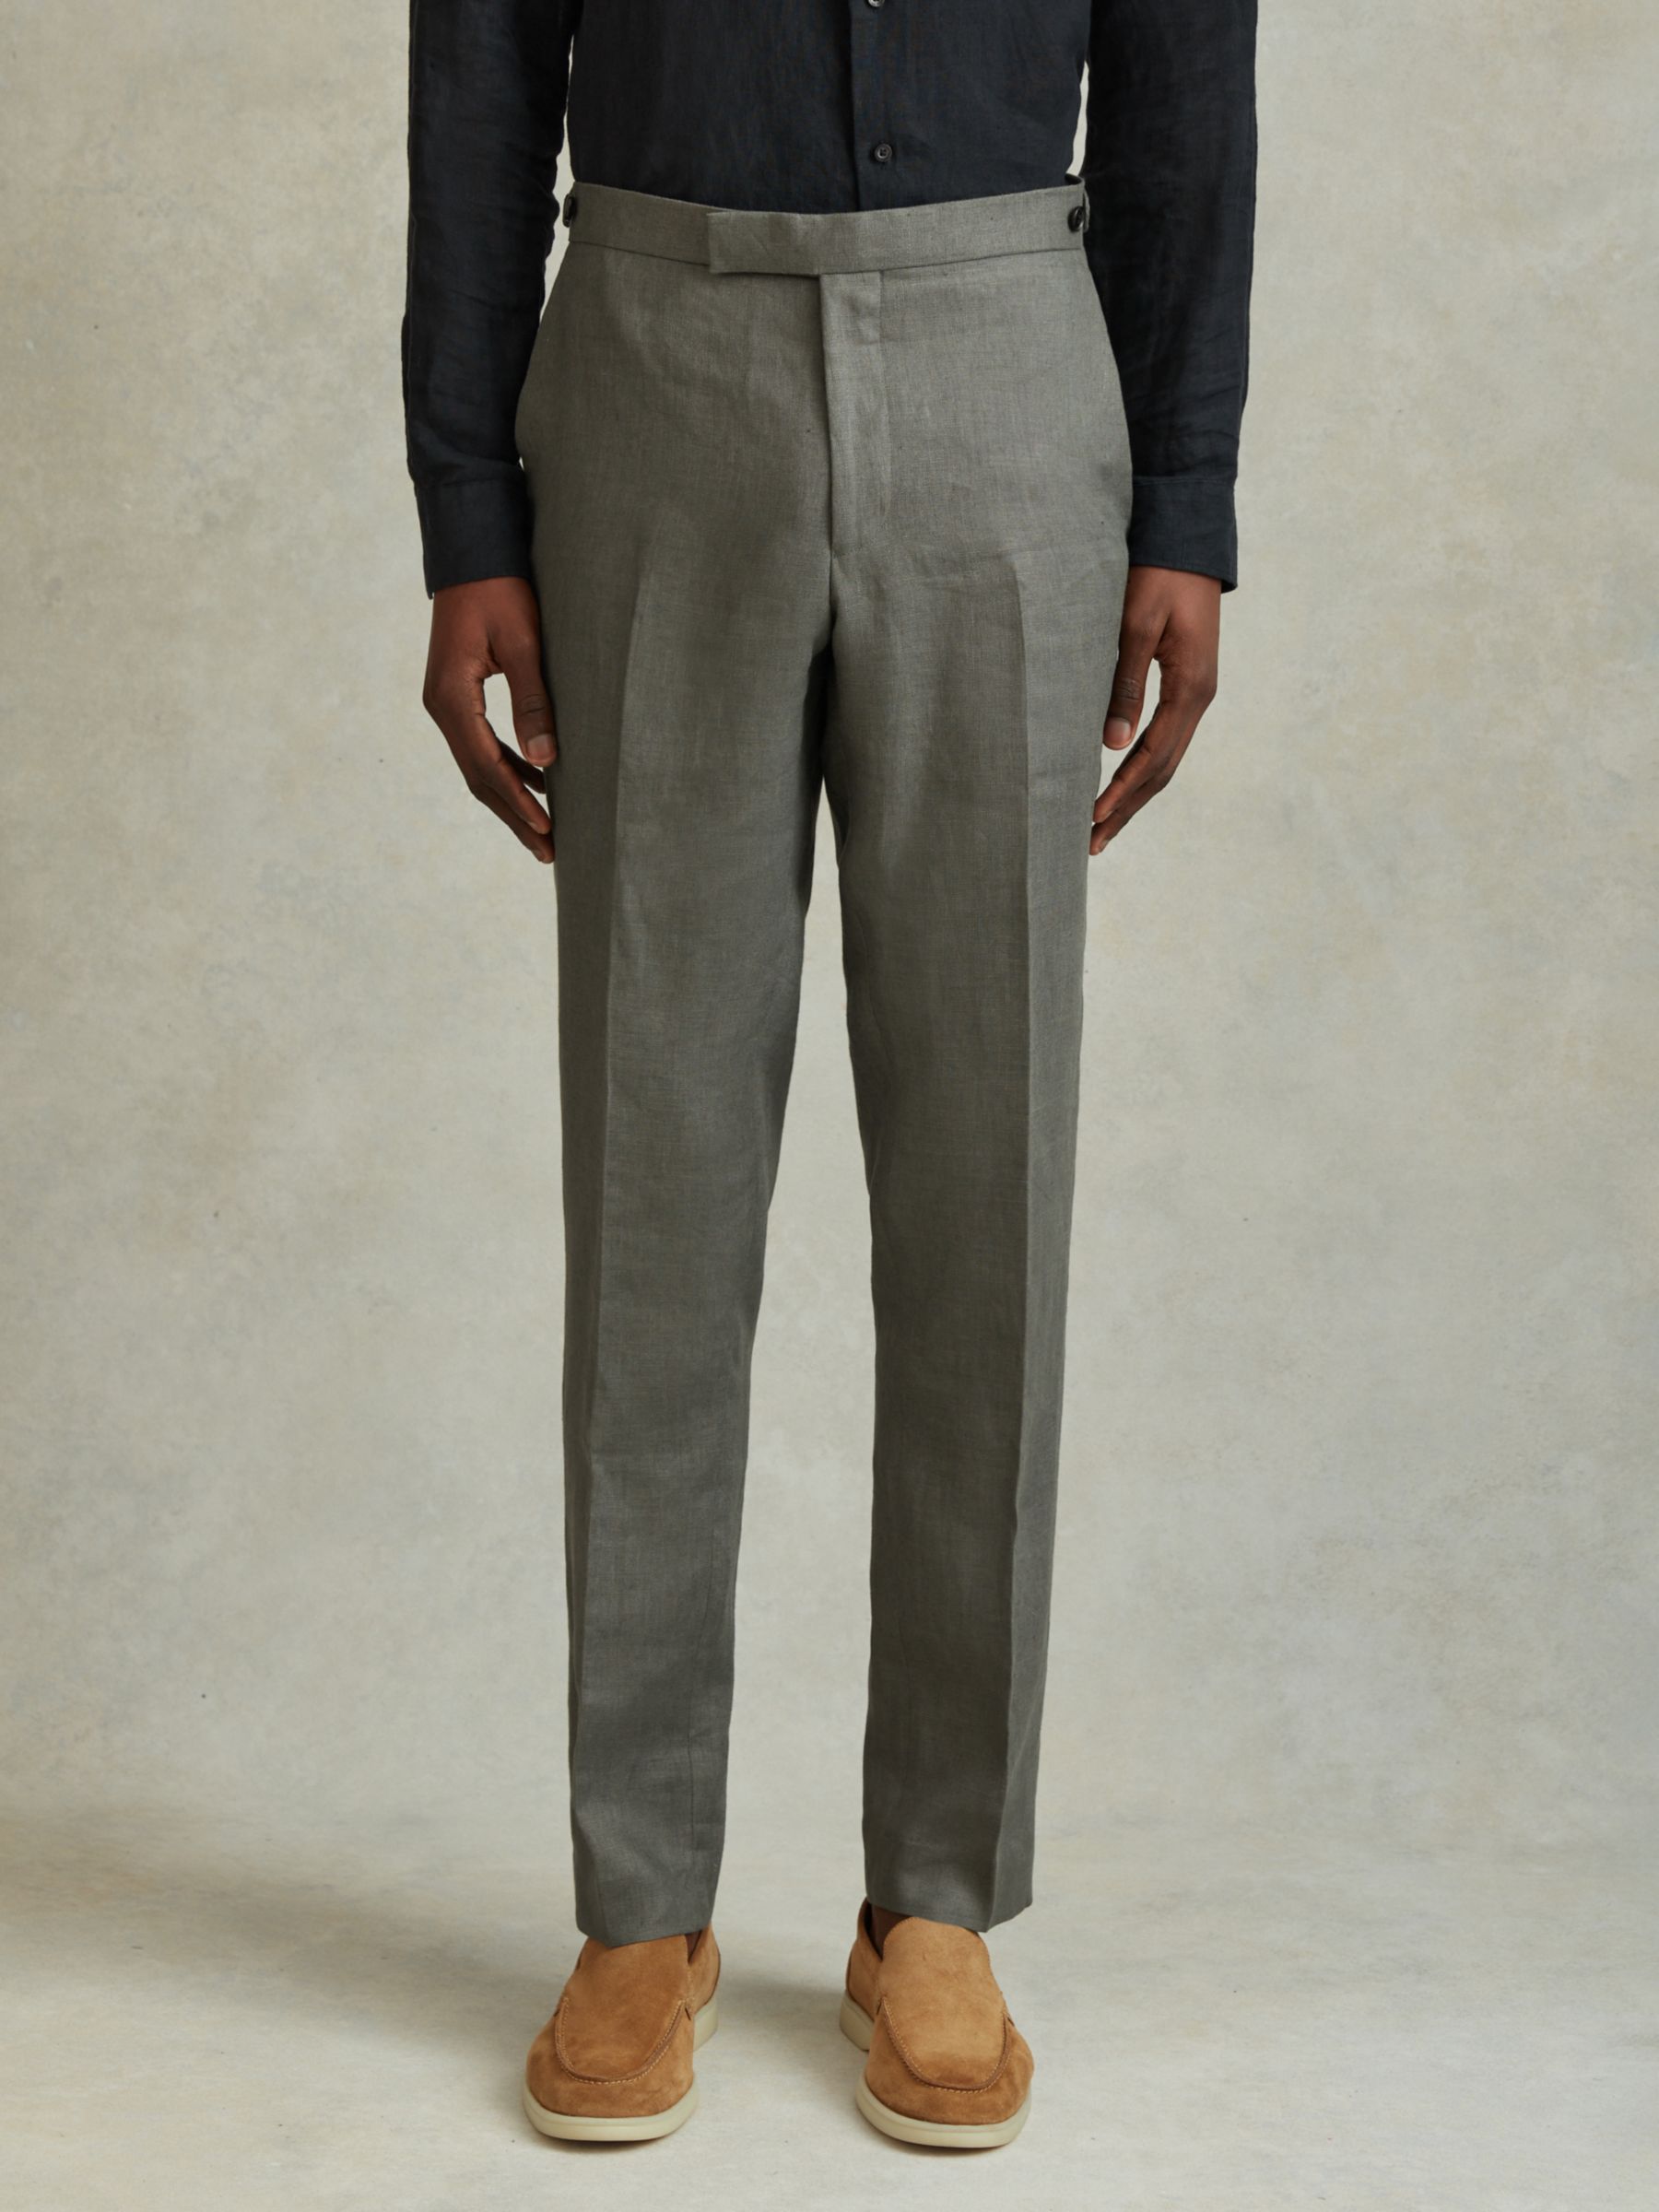 Reiss Halgas Tailored Linen Trousers, Dark Sage, 28R